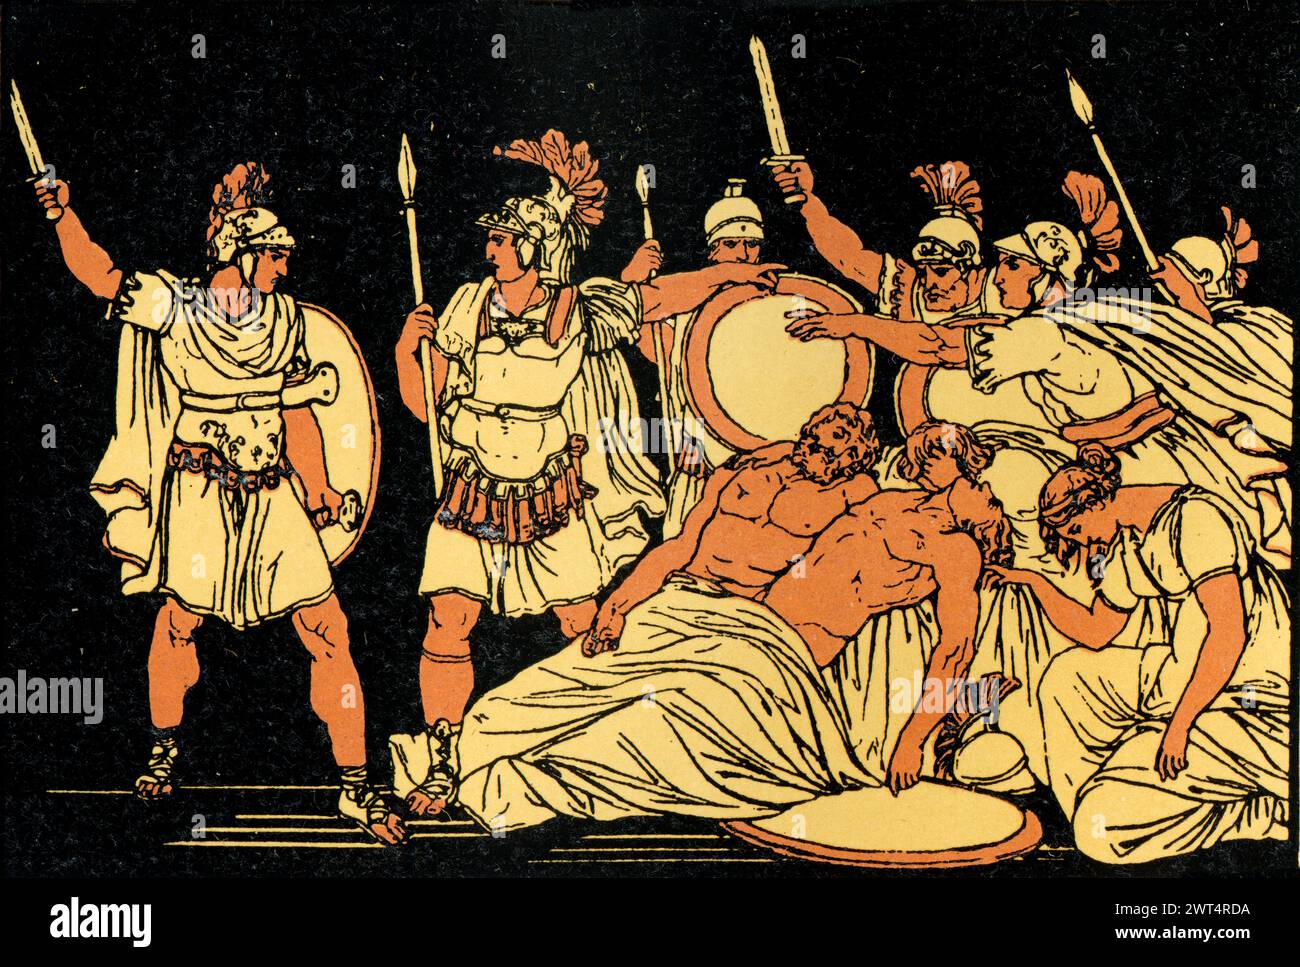 Illustrazione d'epoca mitologia romana, Turnus sui corpi di Almo e Galaesus, Eneide un poema epico latino che racconta la leggendaria storia di Enea, Foto Stock